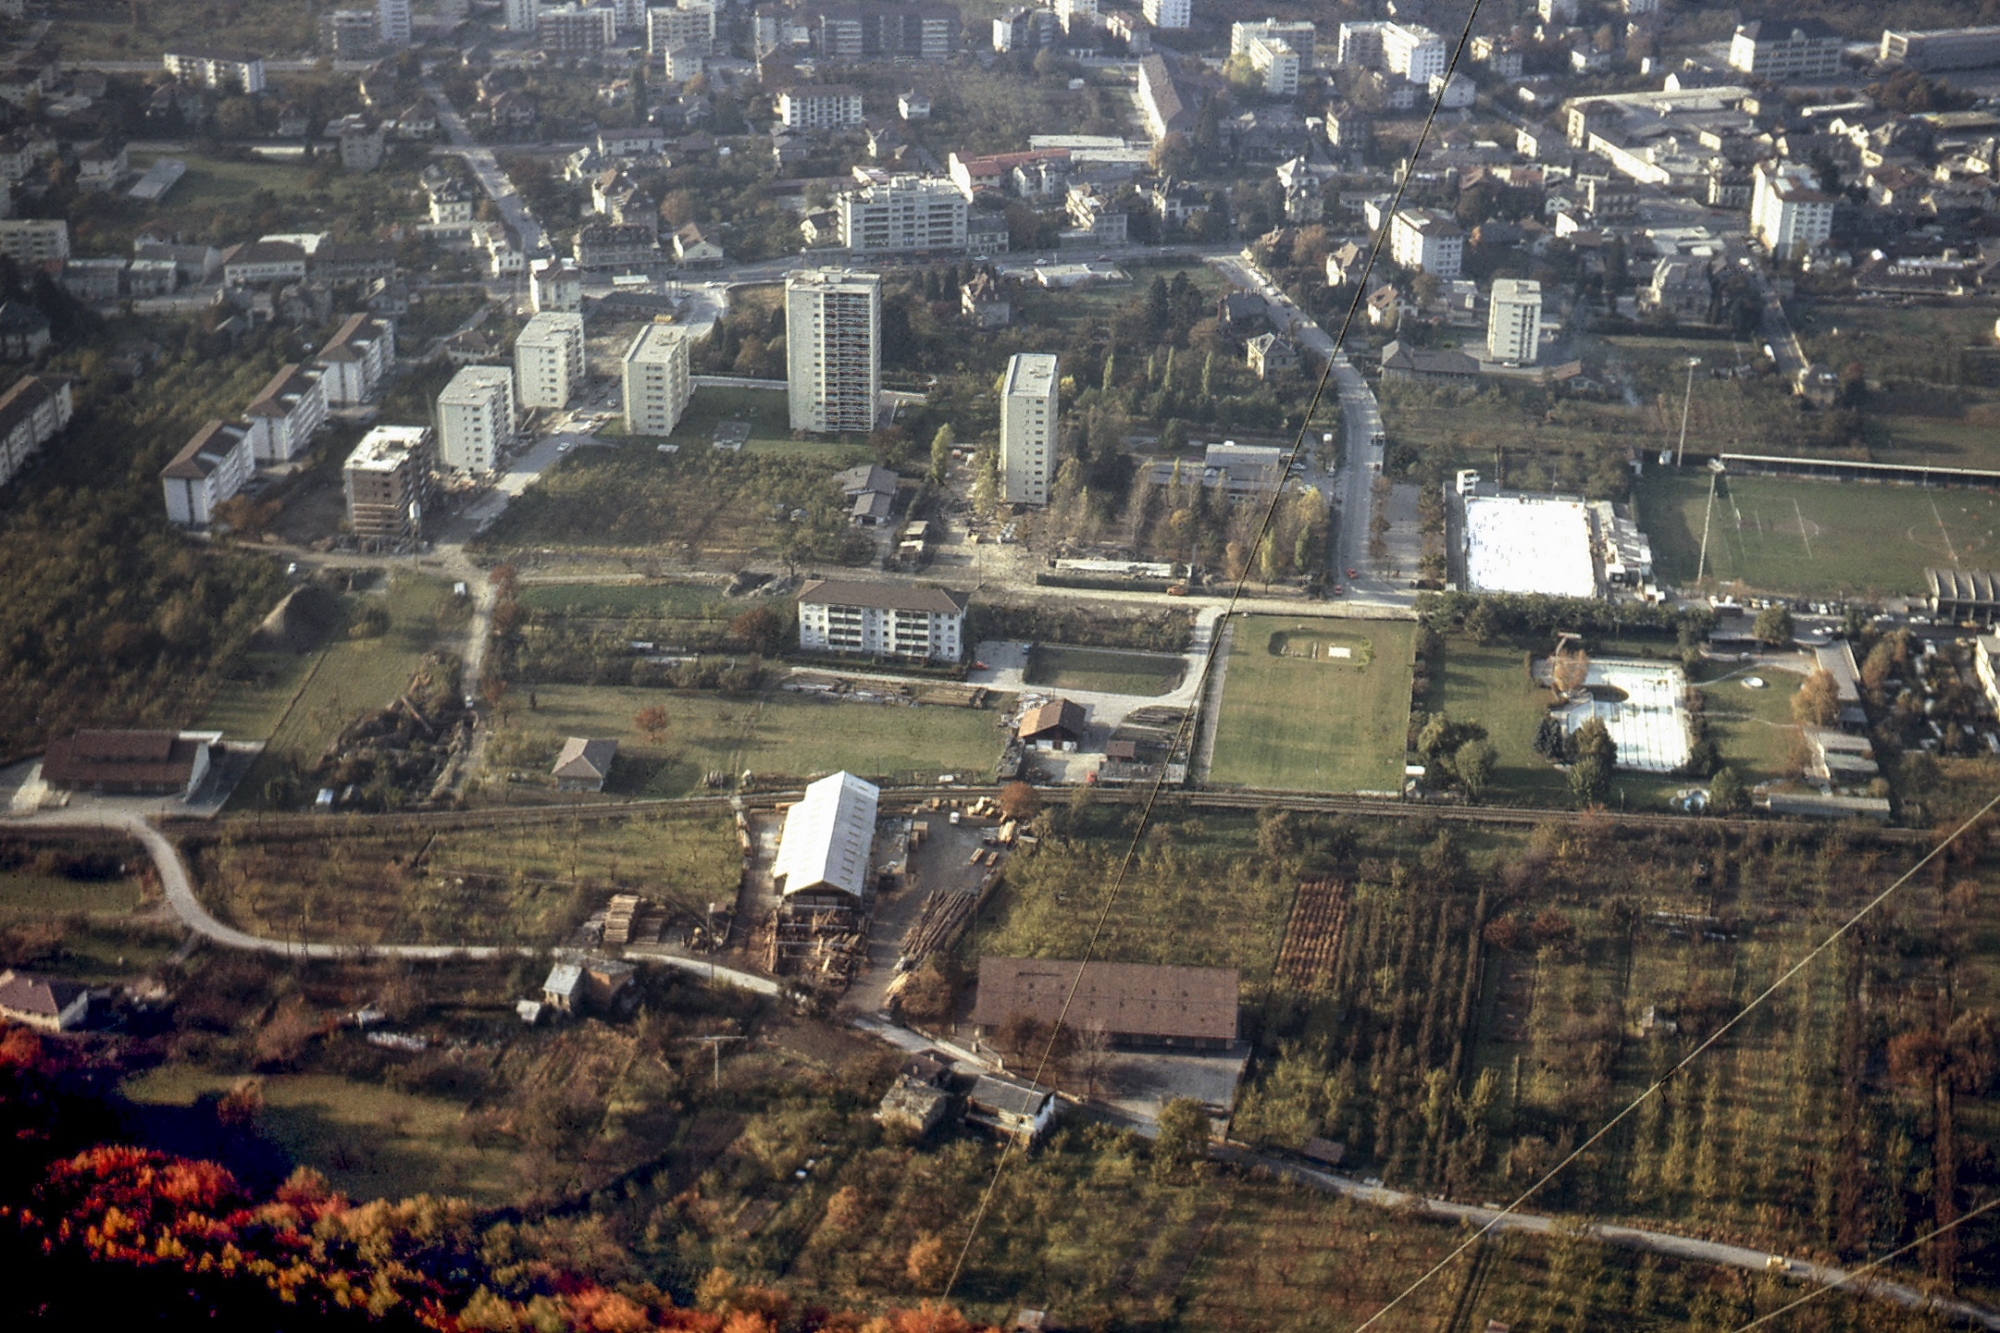 La ville de Martigny en 1973. Quelques immeubles sont sortis de terre, mais le site où sera construite la Fondation Pierre Gianadda, à gauche sur cette photo, autour du Vieil Arsenal, est encore occupé par des vergers d'arbres fruitiers.